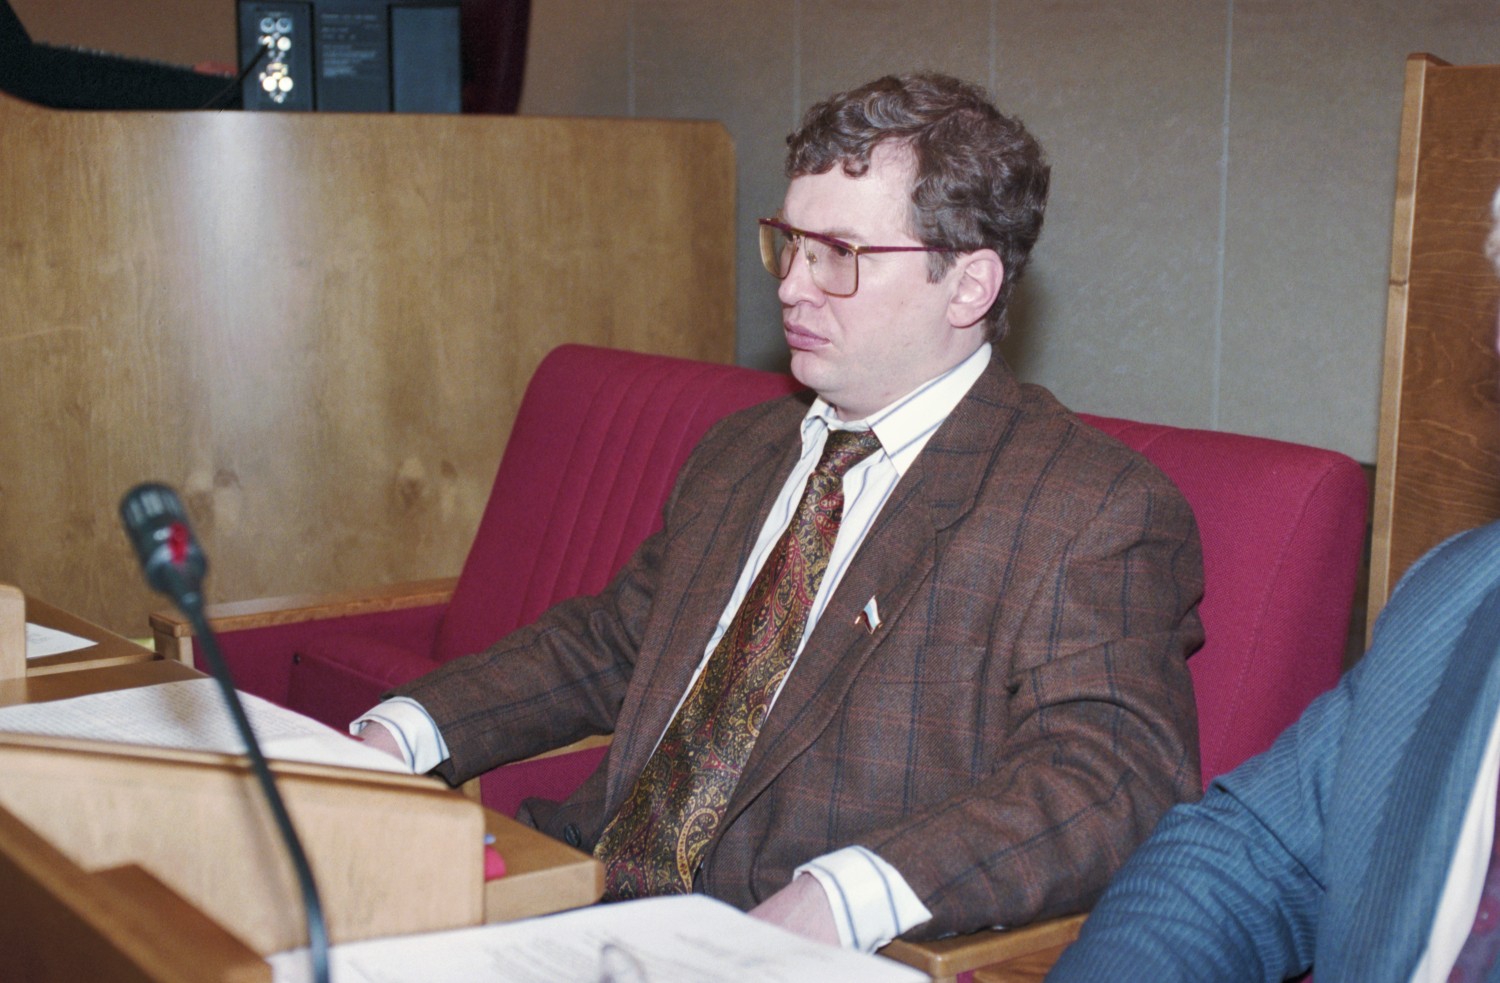 Сергей Мавроди 1994